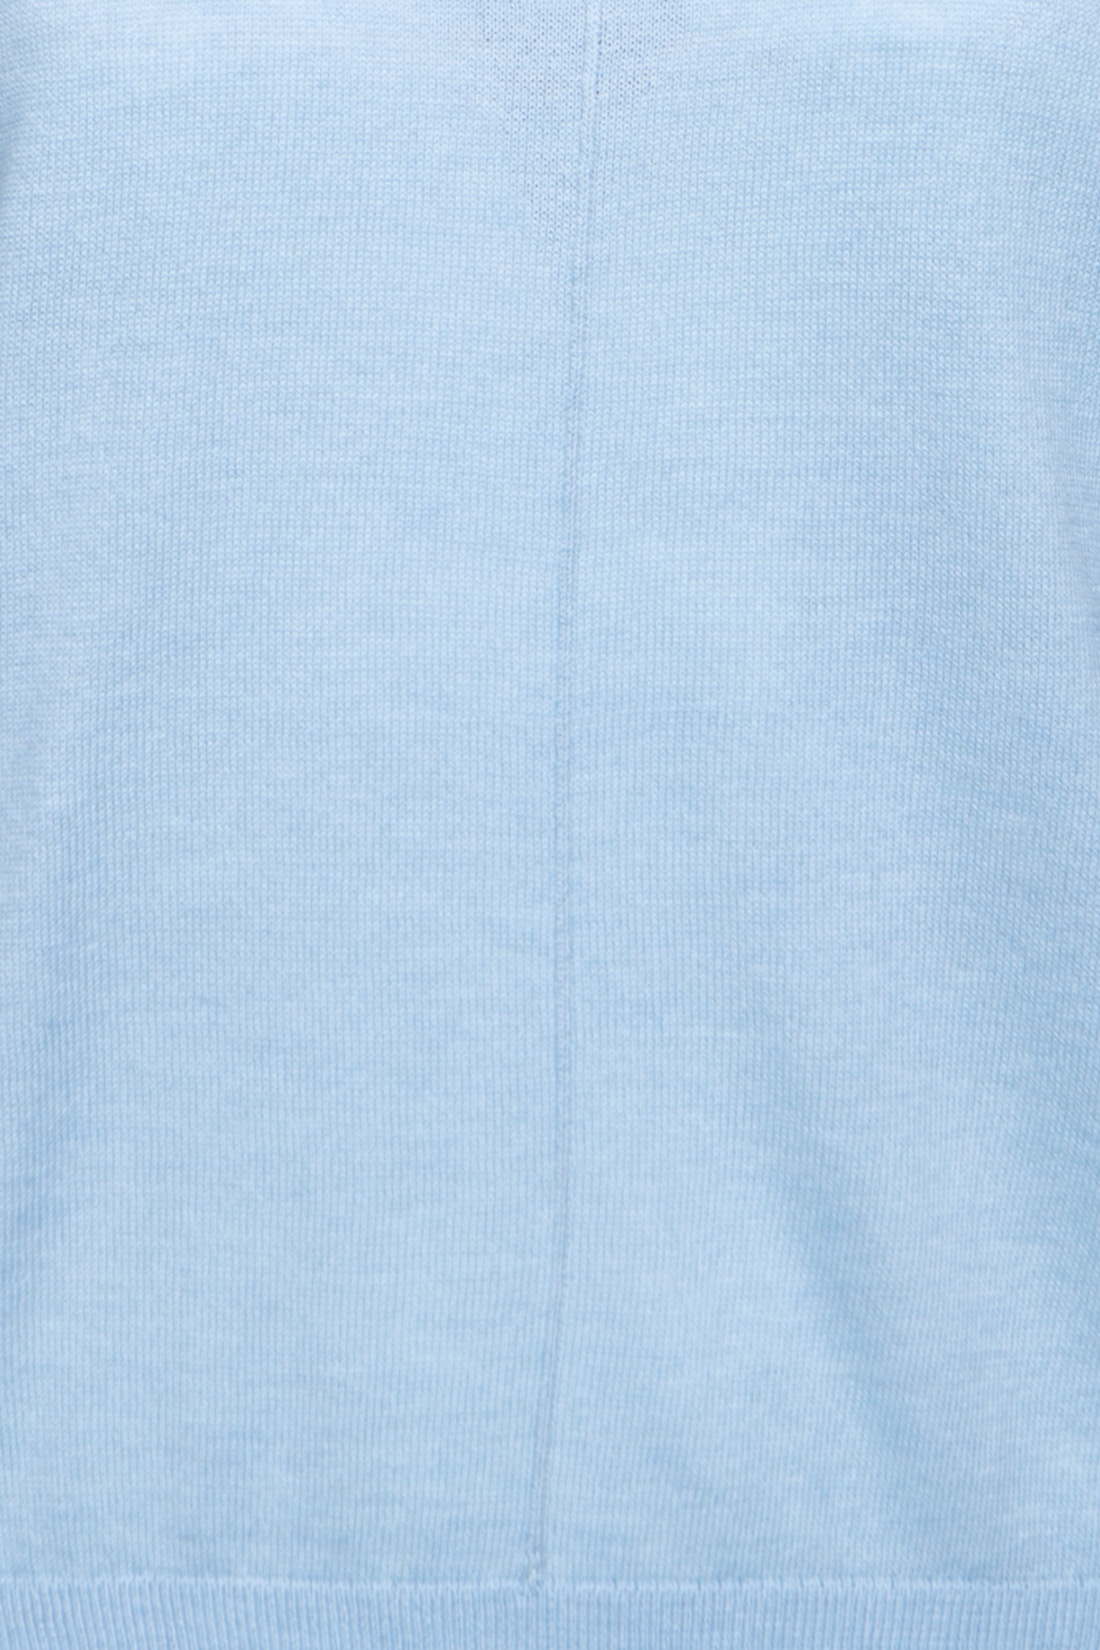 Джемпер с ажурами на рукавах (арт. baon B137031), размер XXL, цвет голубой Джемпер с ажурами на рукавах (арт. baon B137031) - фото 3